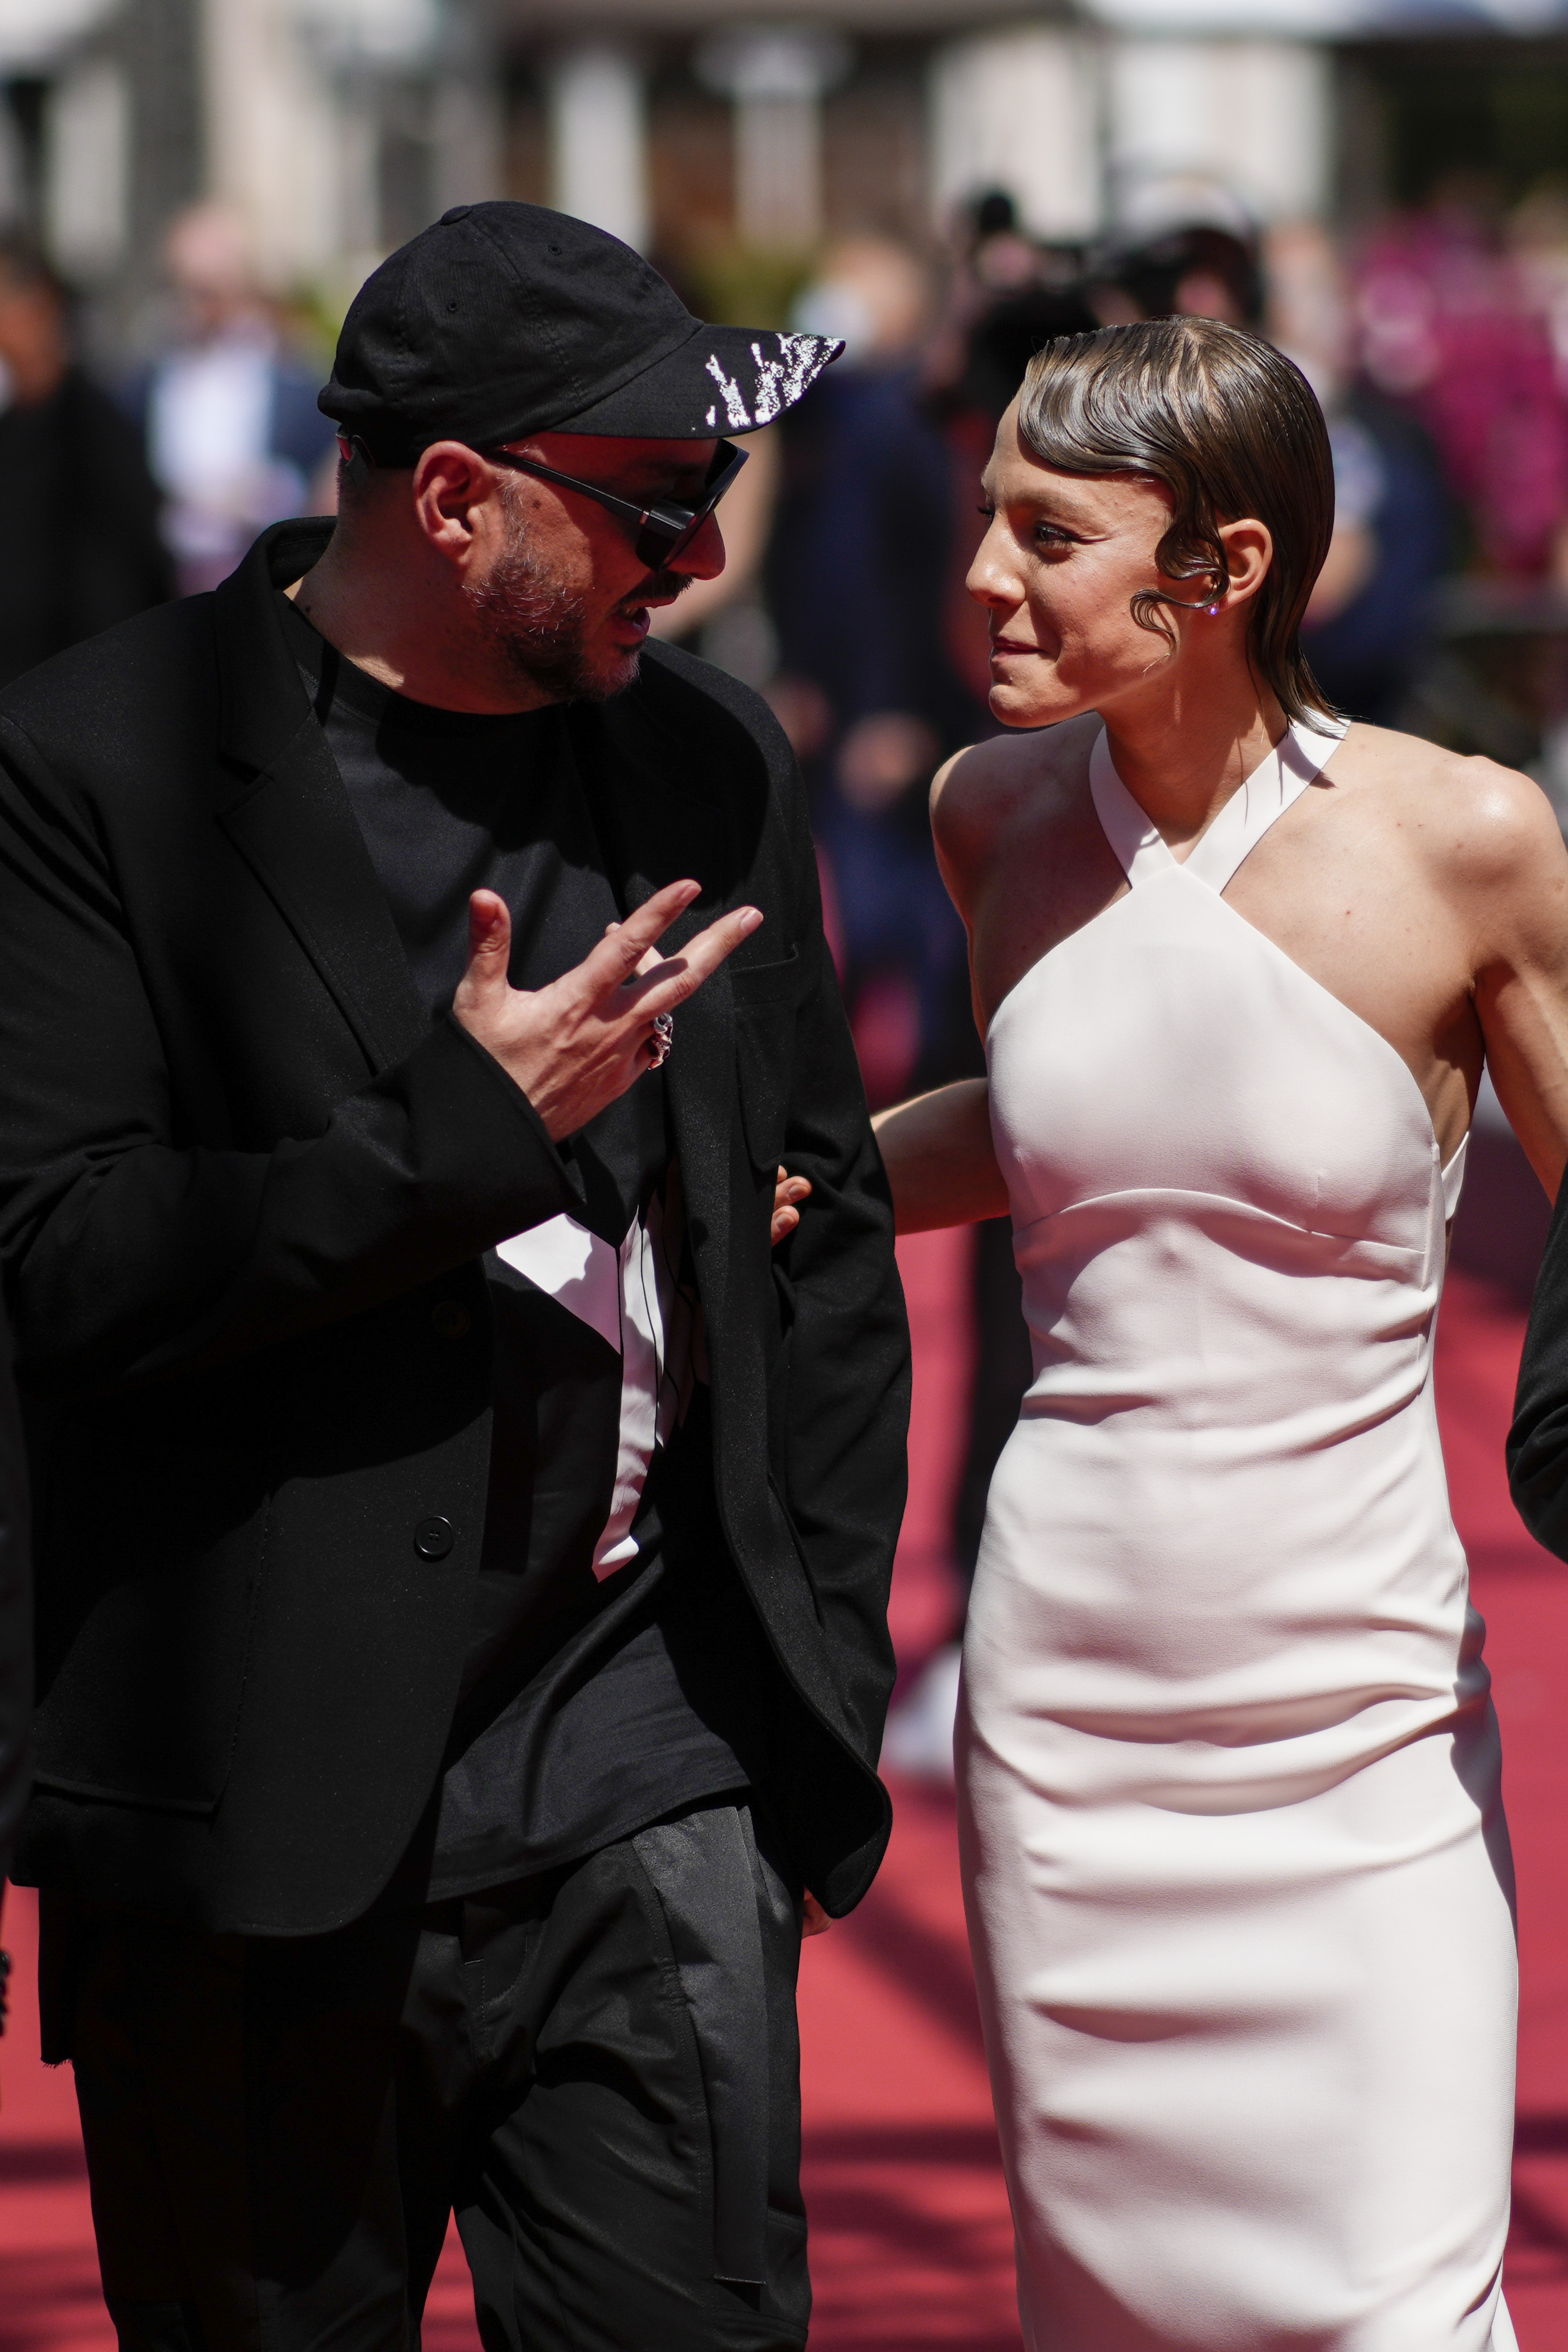 Regizorul rus Kirill Serebrennikov și actrița Alyona Mikhailova sosesc la premiera filmului lor "Soția lui Ceaikovski" la cea de-a 75-a ediție a Festivalului Internațional de Film de la Cannes, miercuri, 18 mai 2022, la Cannes, Franța.  (AP Foto/Daniel Cole)